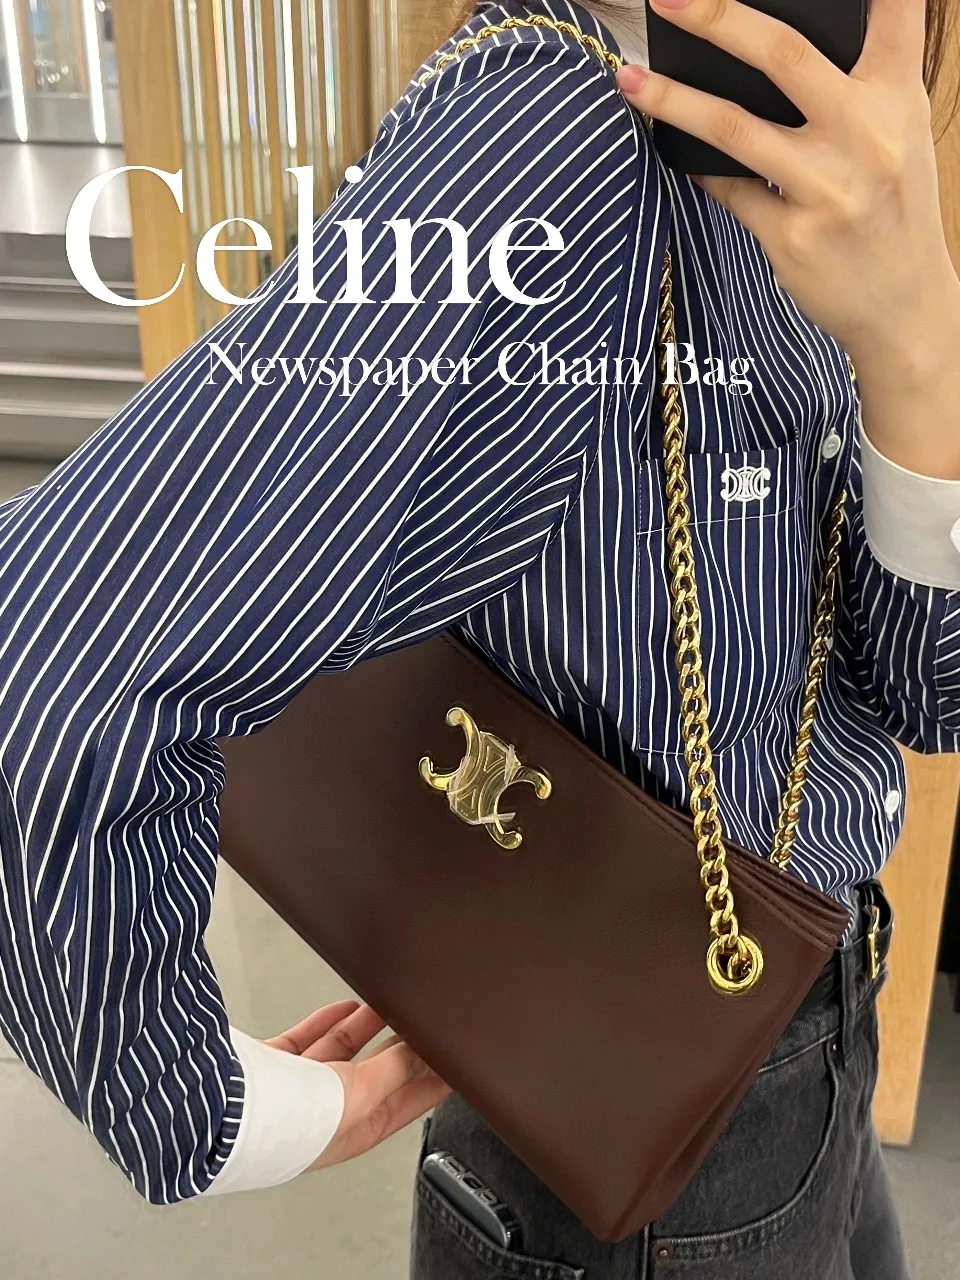 Celine Black Fabric Chain Pochette Bag Celine